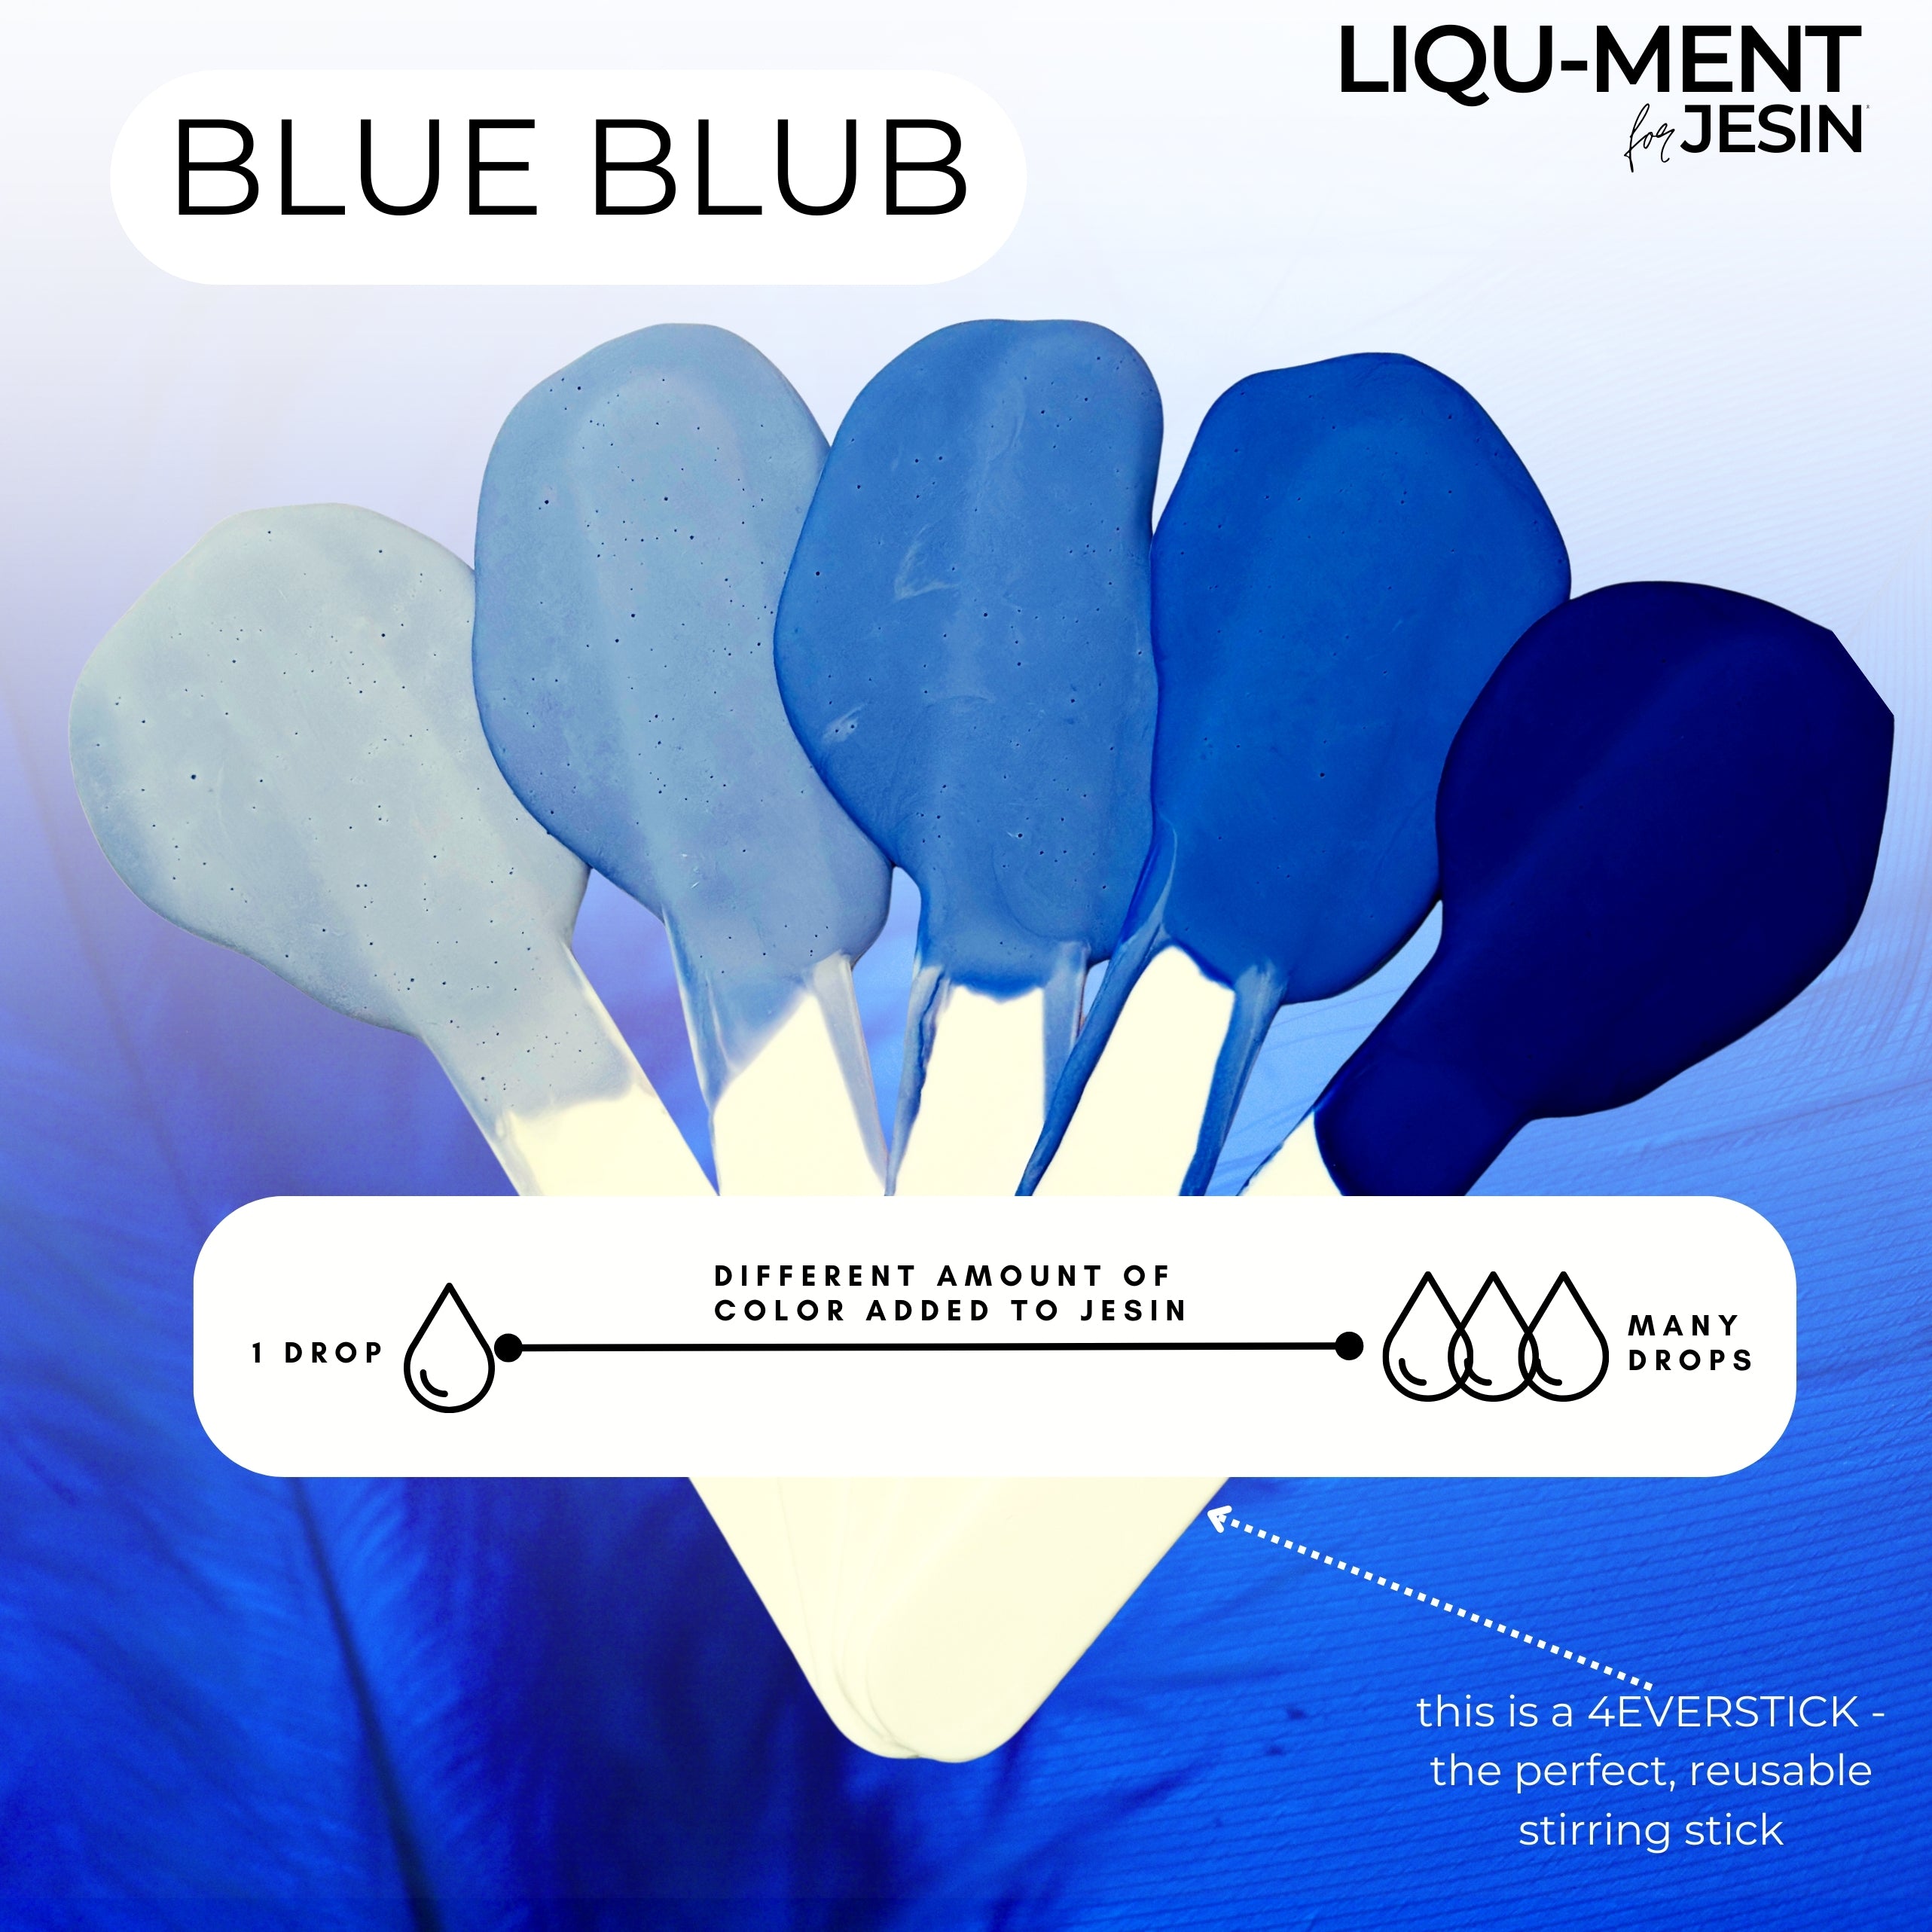 LIQU-MENT for JESIN -  BLUE BLUB - 50 ml